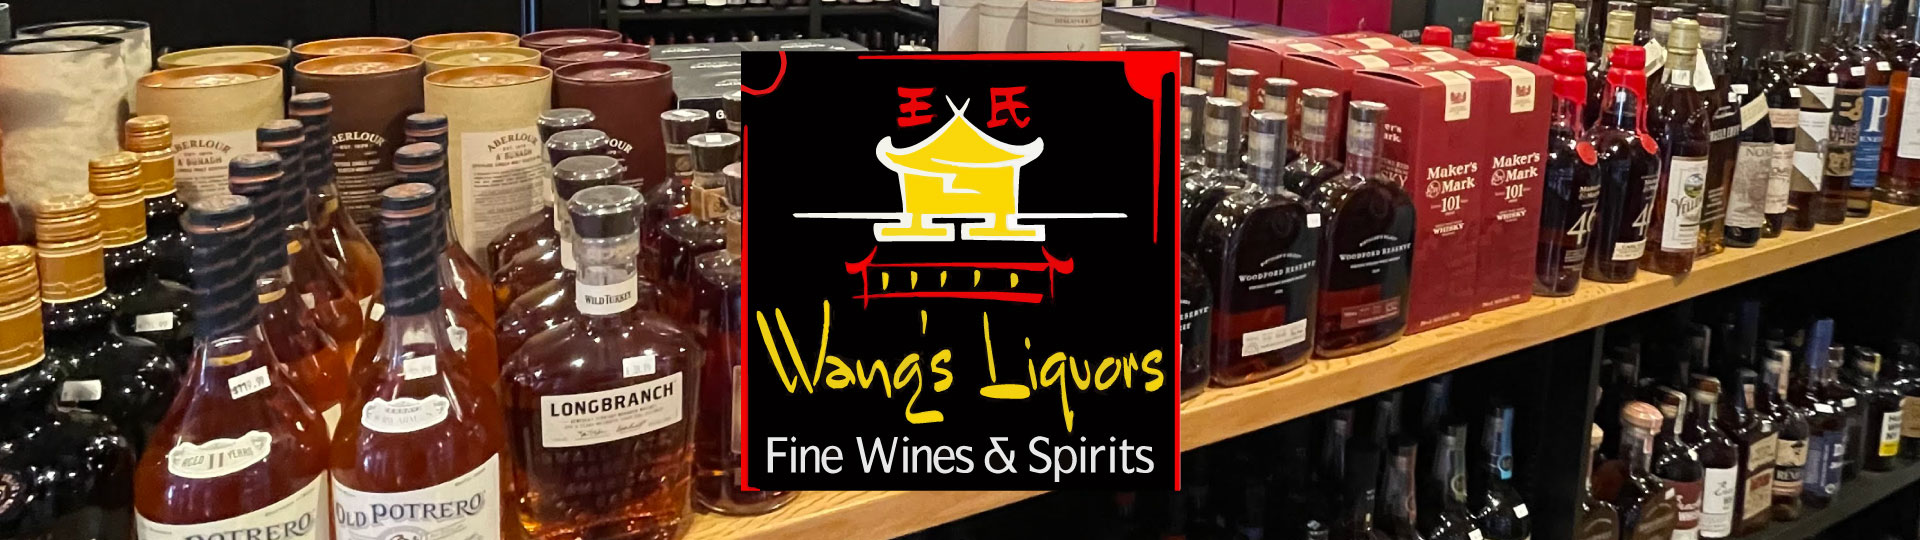 Wang's Liquors